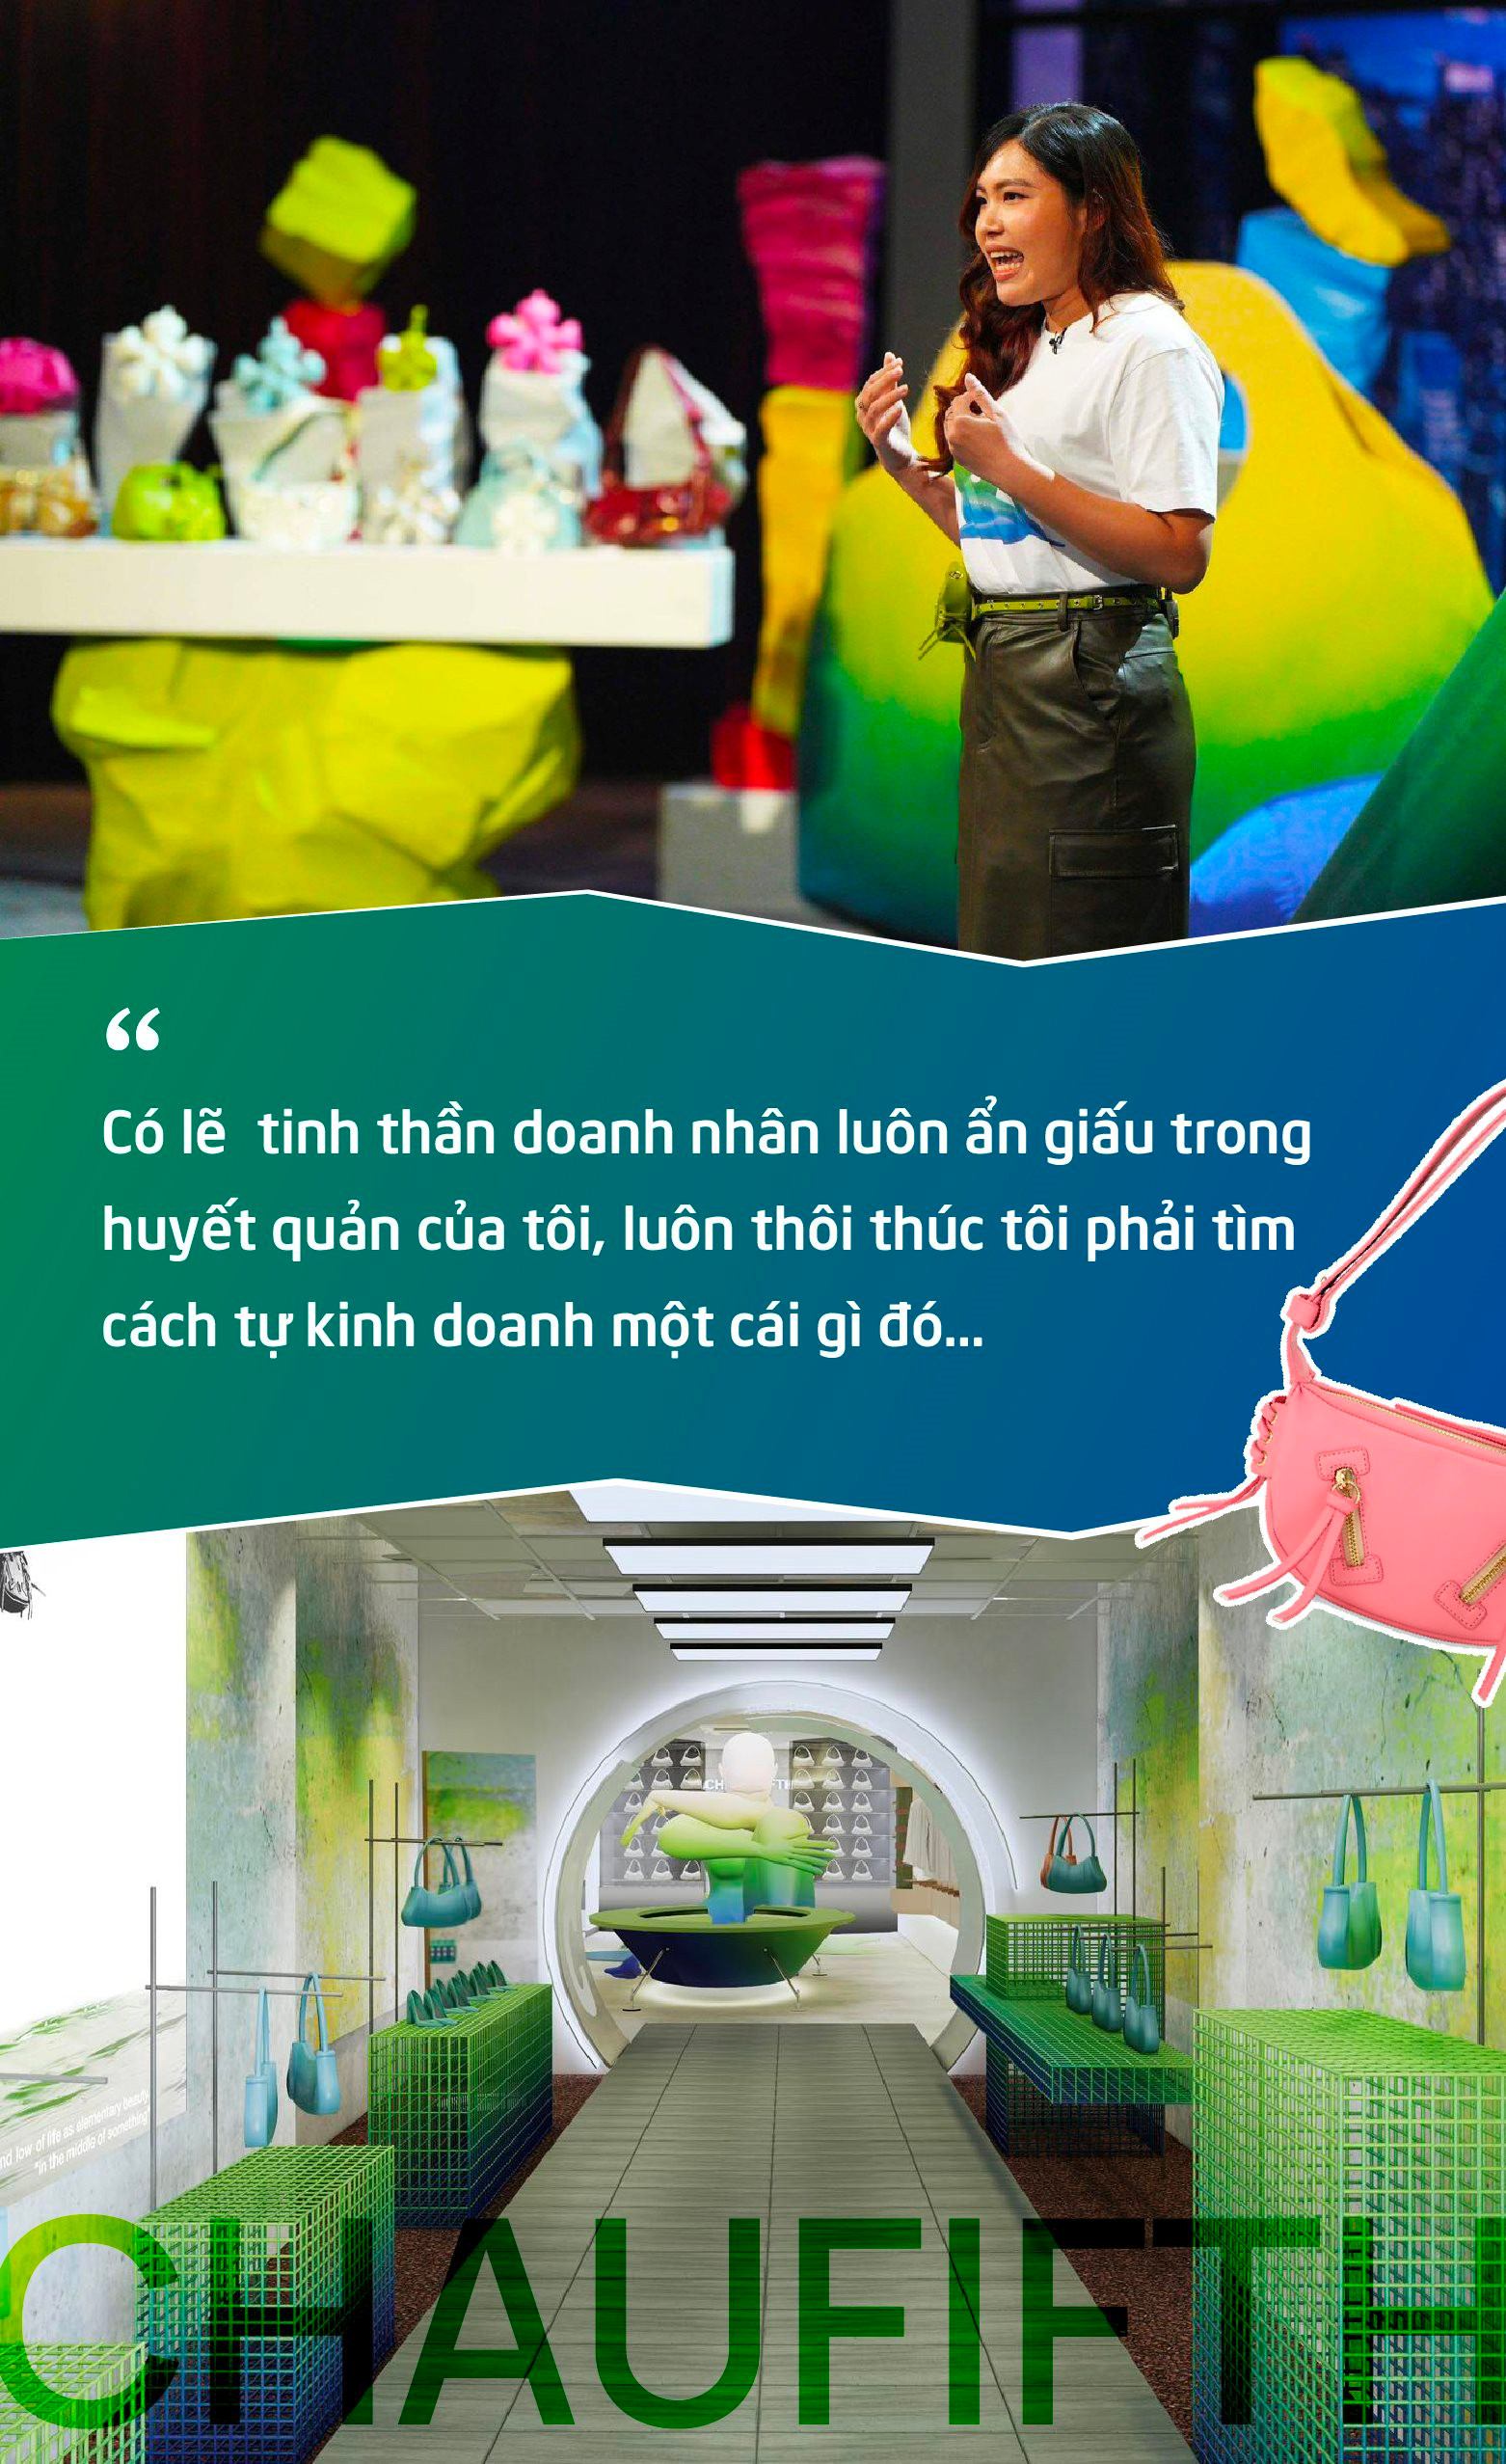 Nhân viên văn phòng 9x bỏ 3 triệu đồng đi học Photoshop, xây dựng thương hiệu túi xách CHAUTFIFTH được định giá 104 tỷ đồng trên Shark Tank Việt Nam - Ảnh 3.